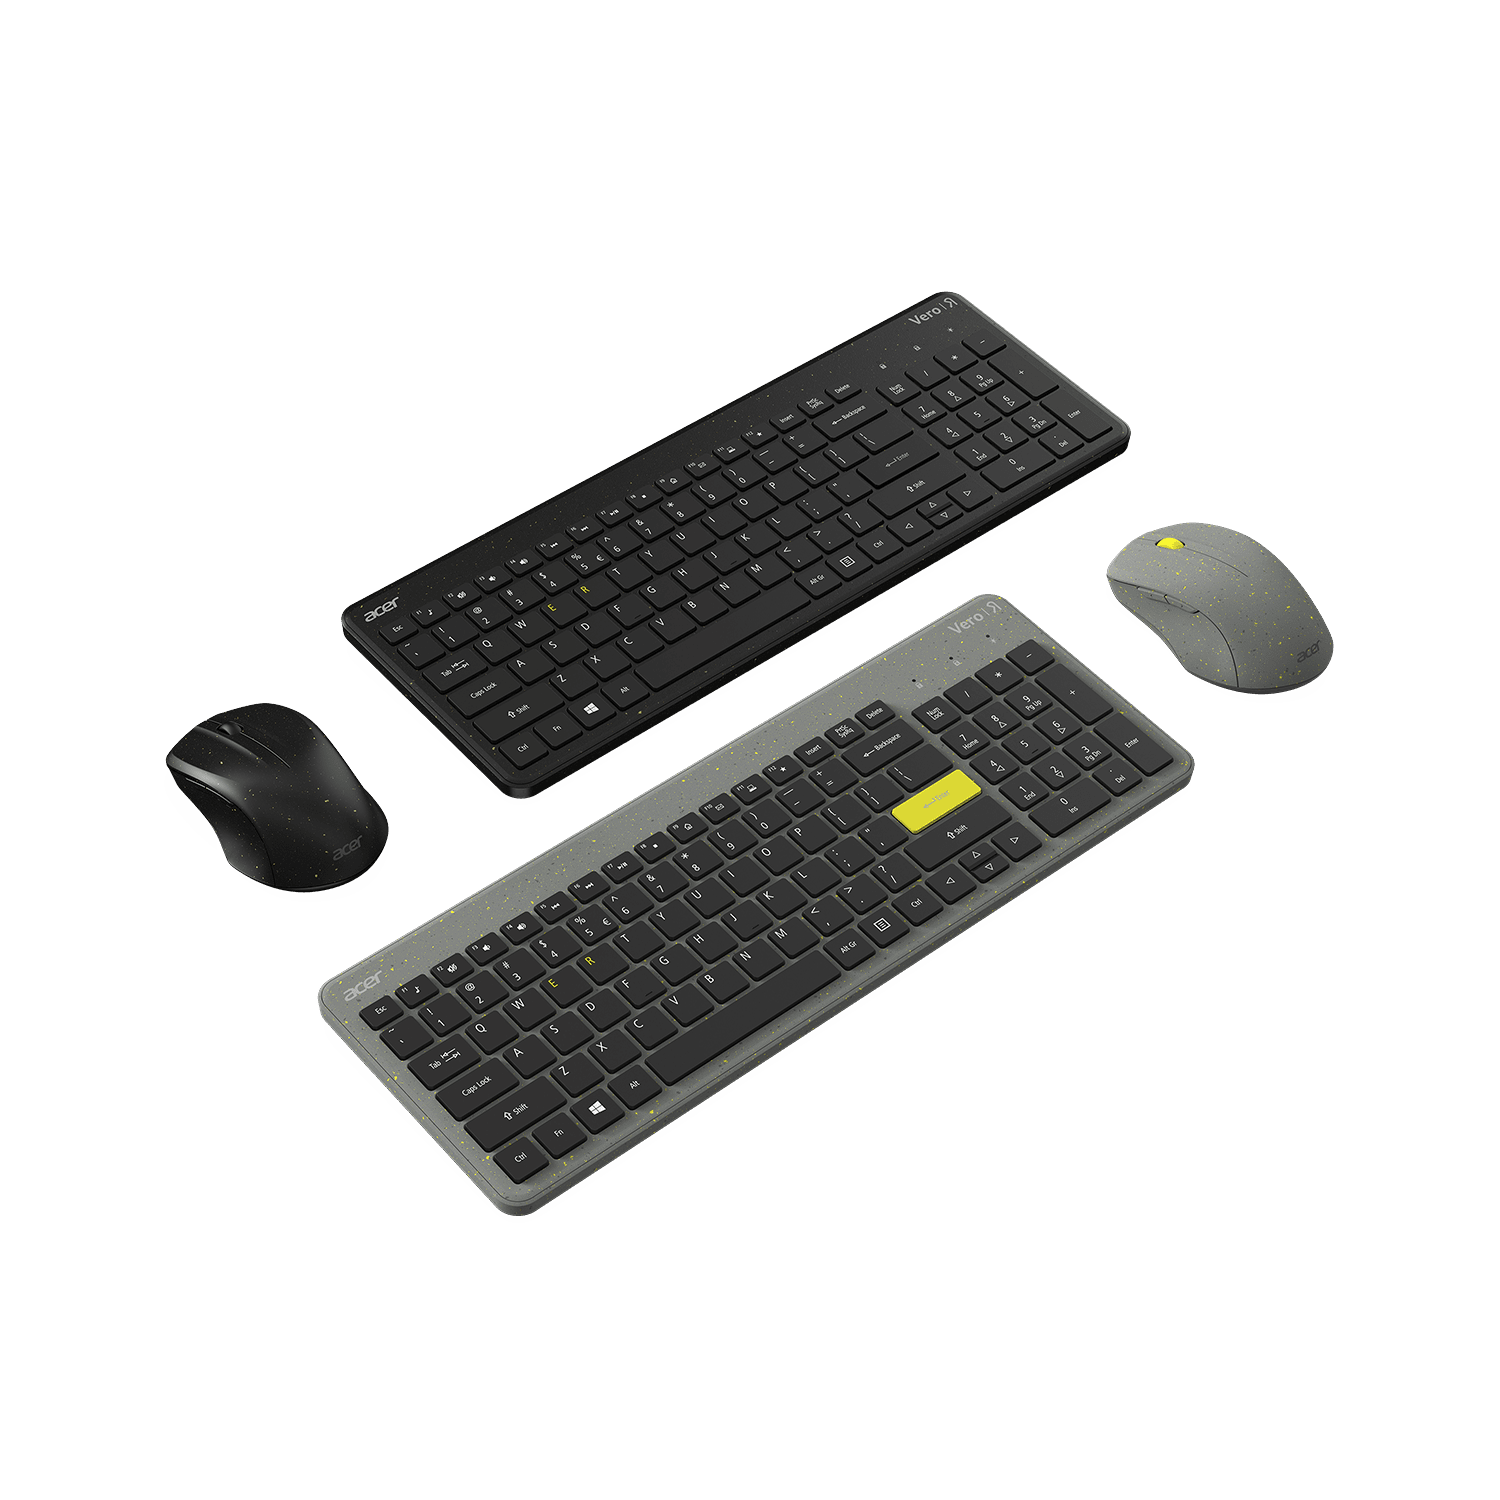 Vero Keyboard Mouse 01 MMOSITE - Thông tin công nghệ, review, thủ thuật PC, gaming